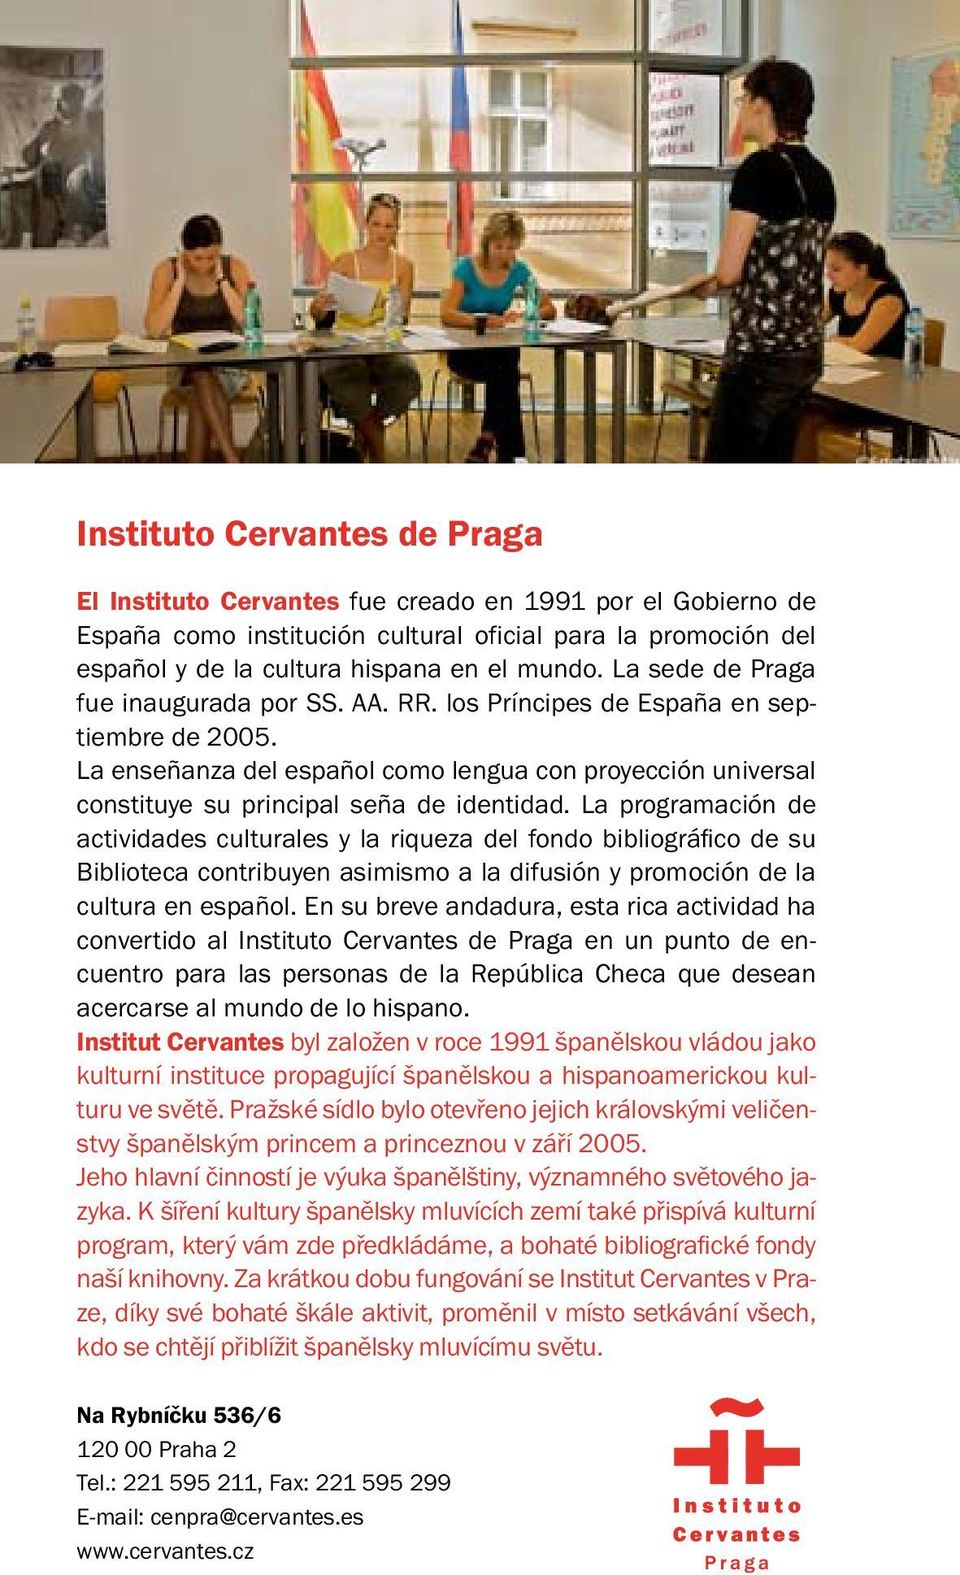 La programación de actividades culturales y la riqueza del fondo bibliográfico de su Biblioteca contribuyen asimismo a la difusión y promoción de la cultura en español.